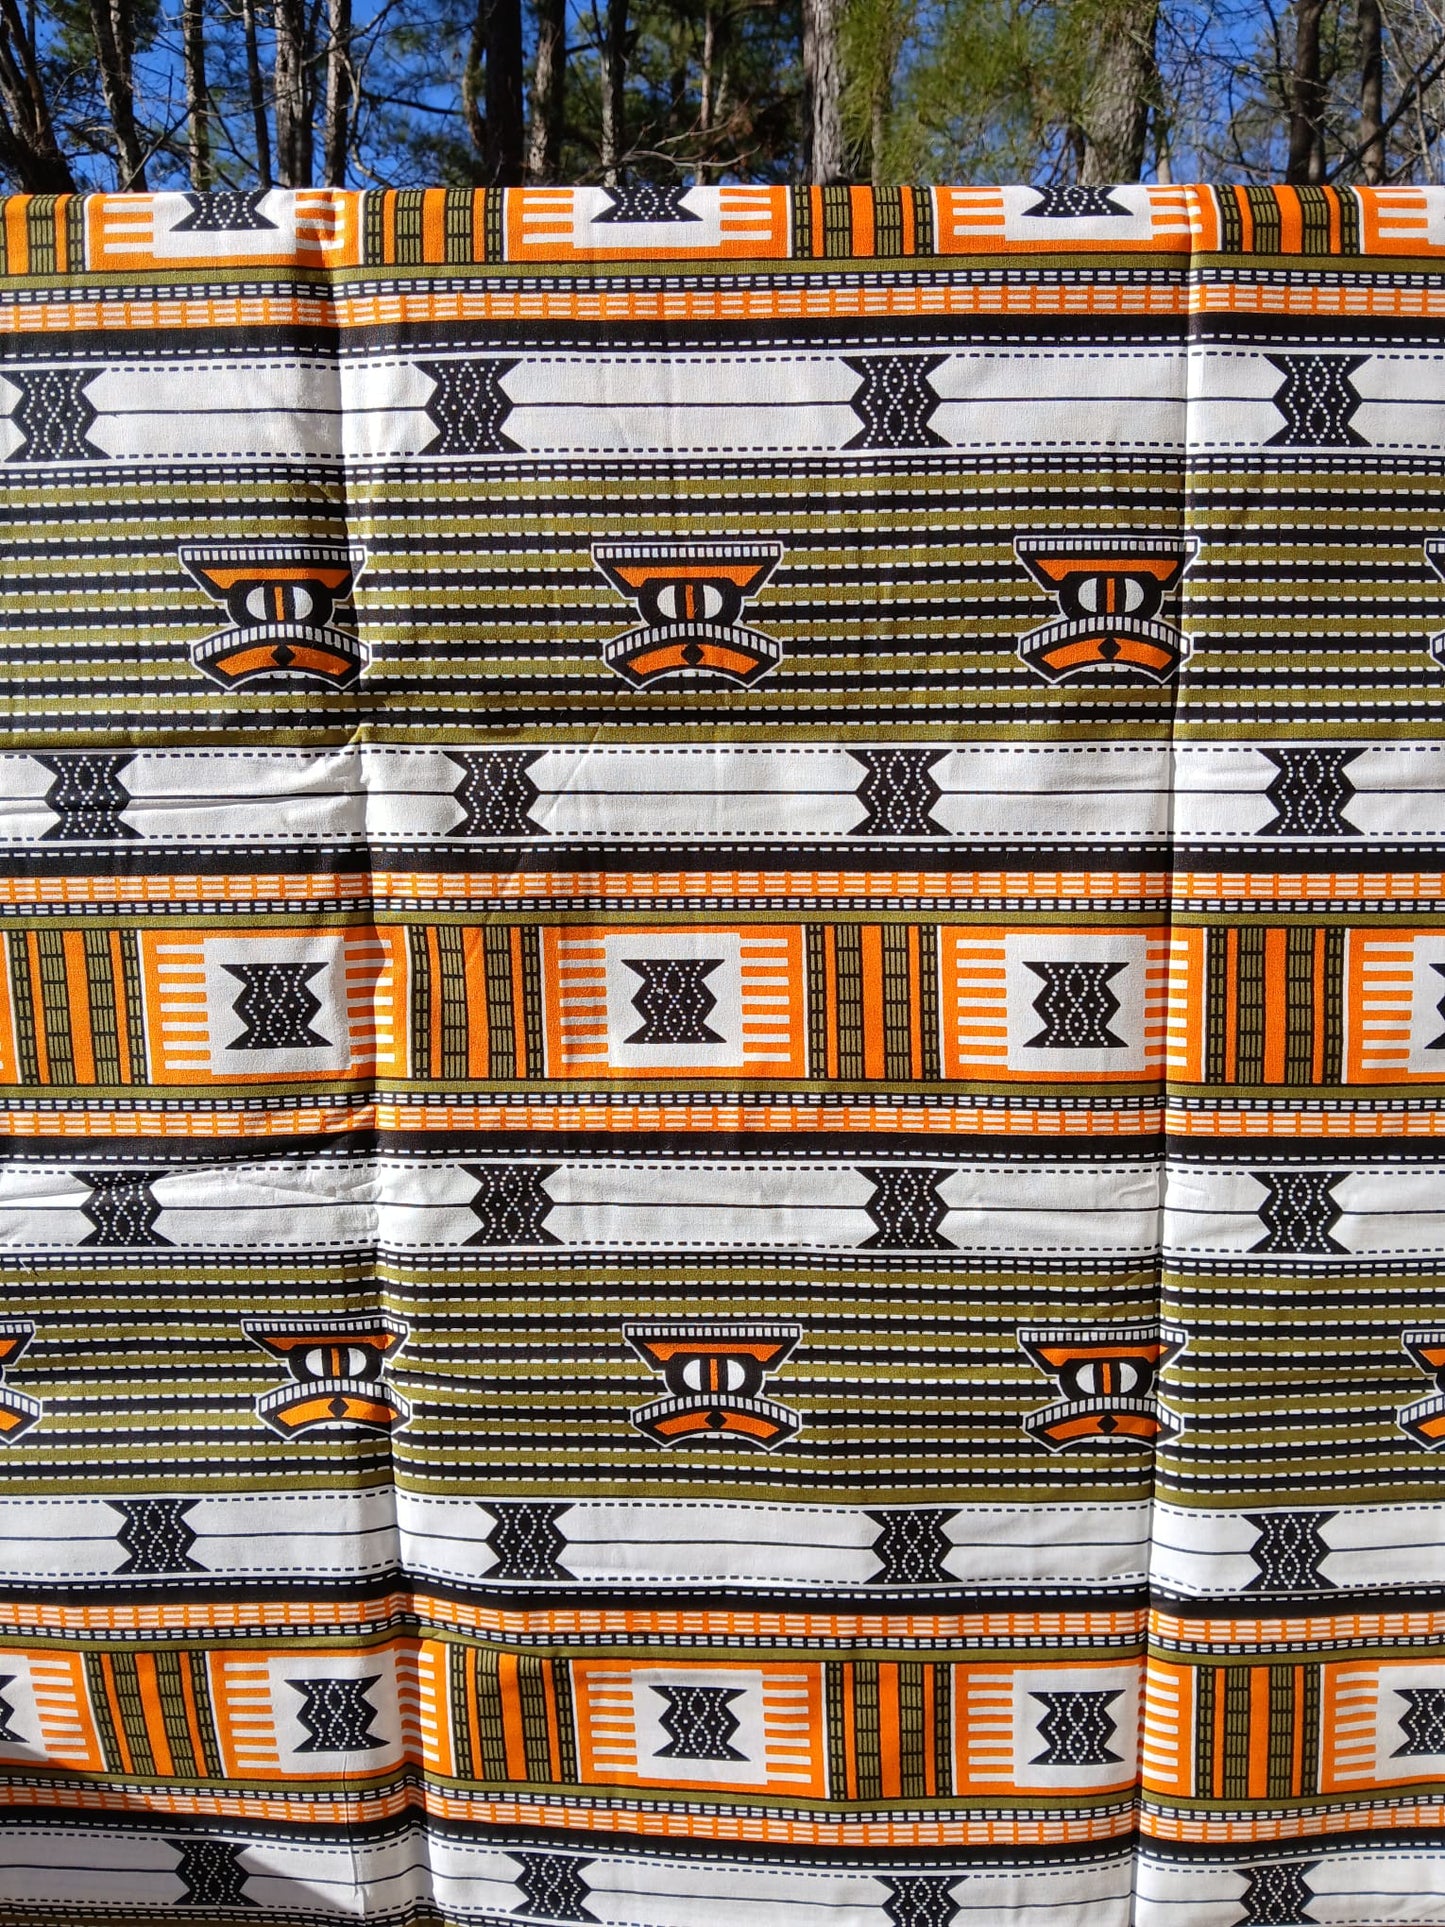 Authentic African fabrics